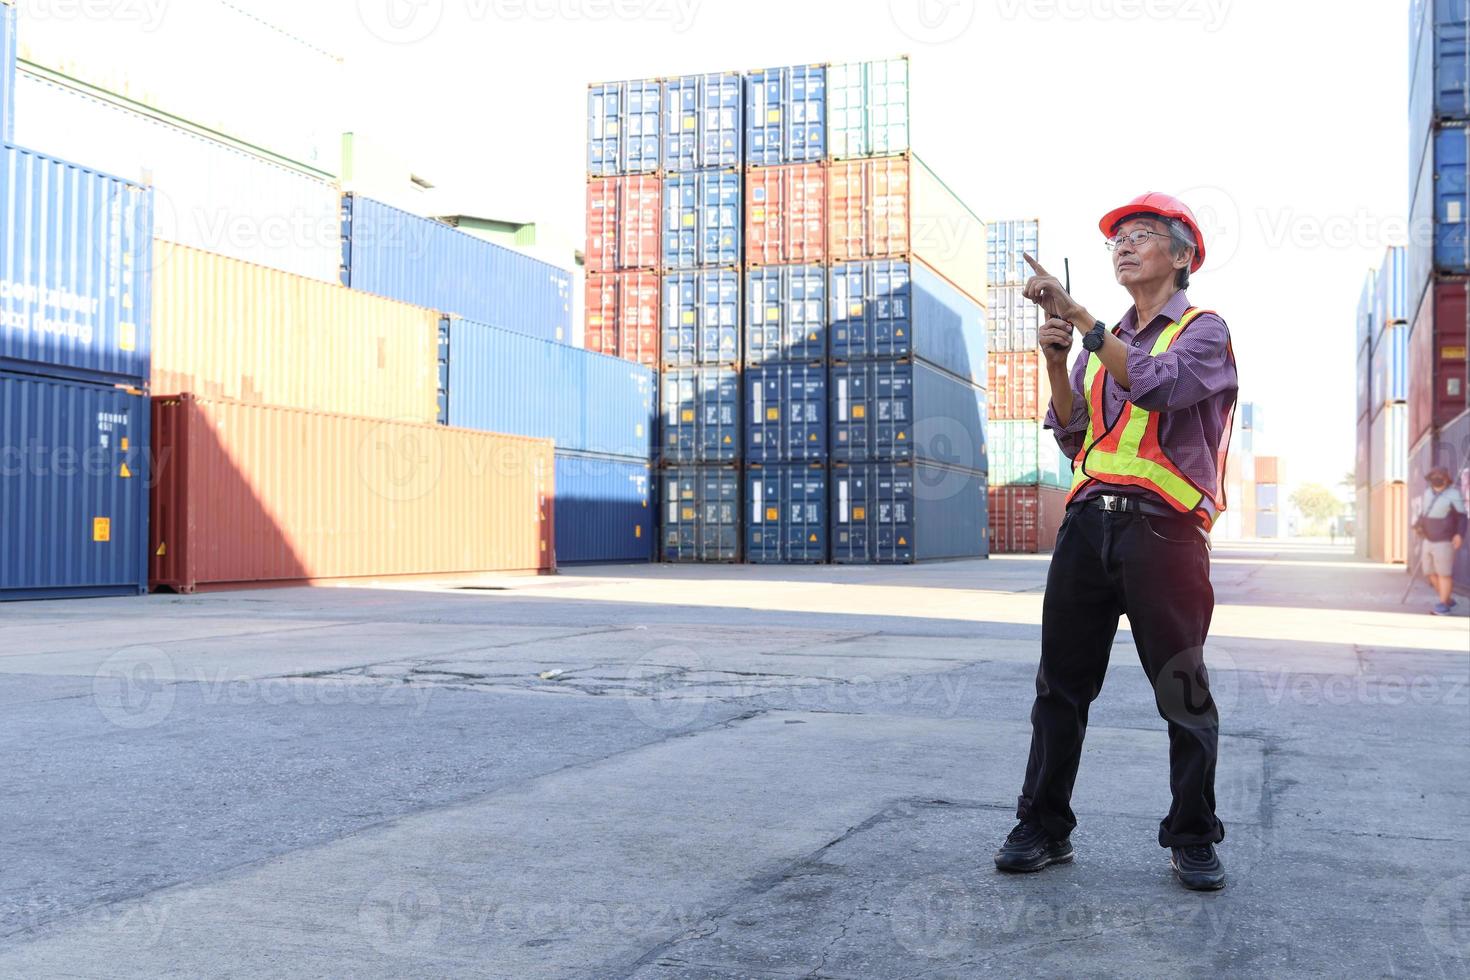 Ingeniero senior de trabajadores asiáticos de edad avanzada que usa chaleco y casco de seguridad, sostiene walkies de radio y señala algo en el patio de contenedores de carga de envío logístico. personas mayores en el concepto de lugar de trabajo foto